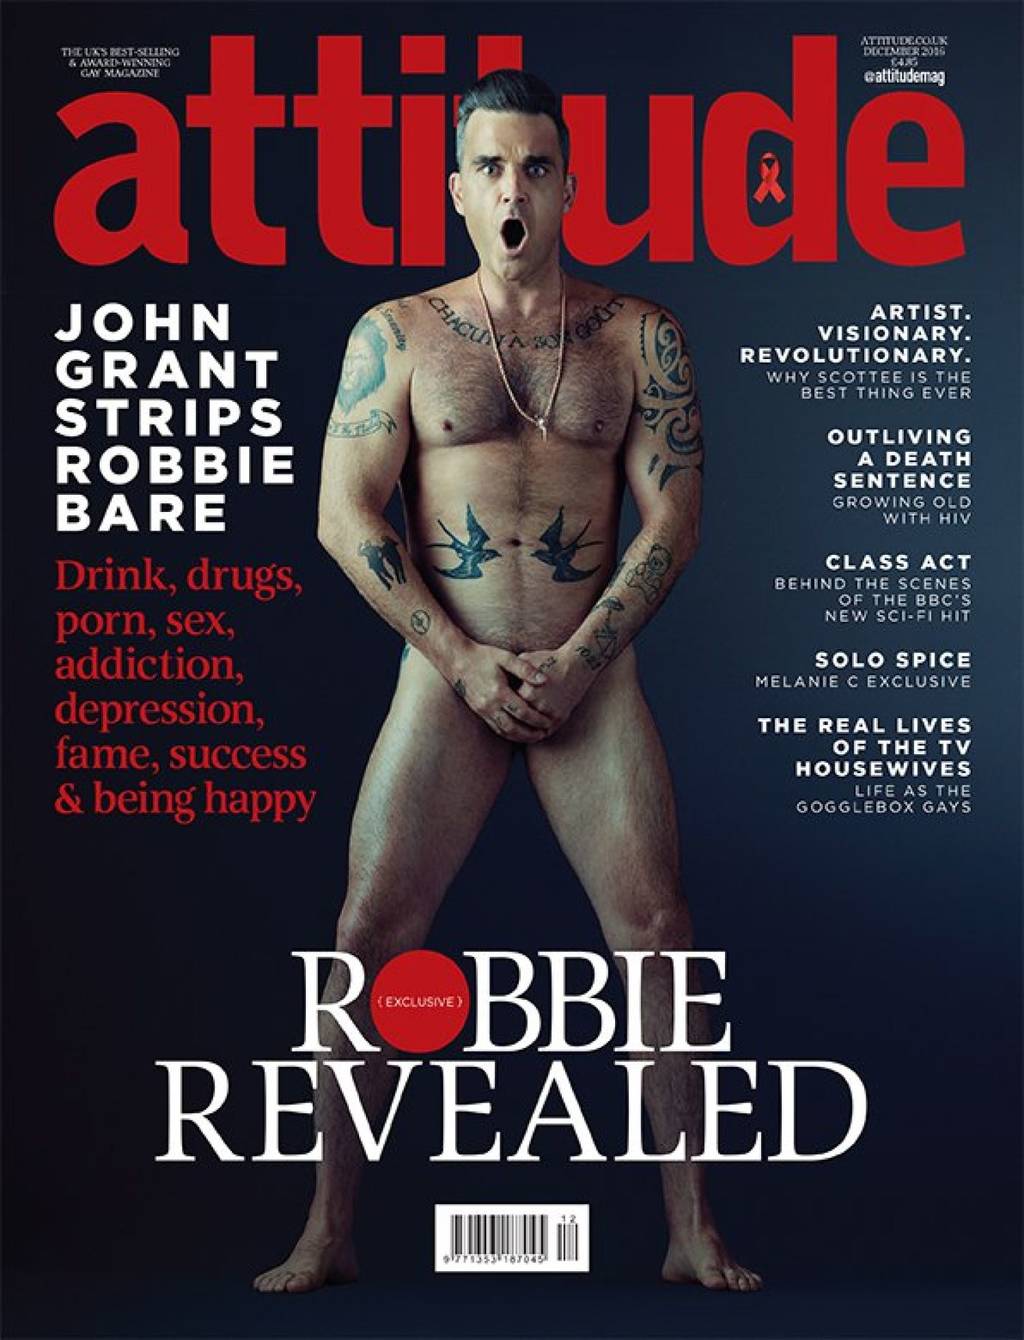 Atrevido. A sus 42 años, el cantante posó en la revista Attitude.